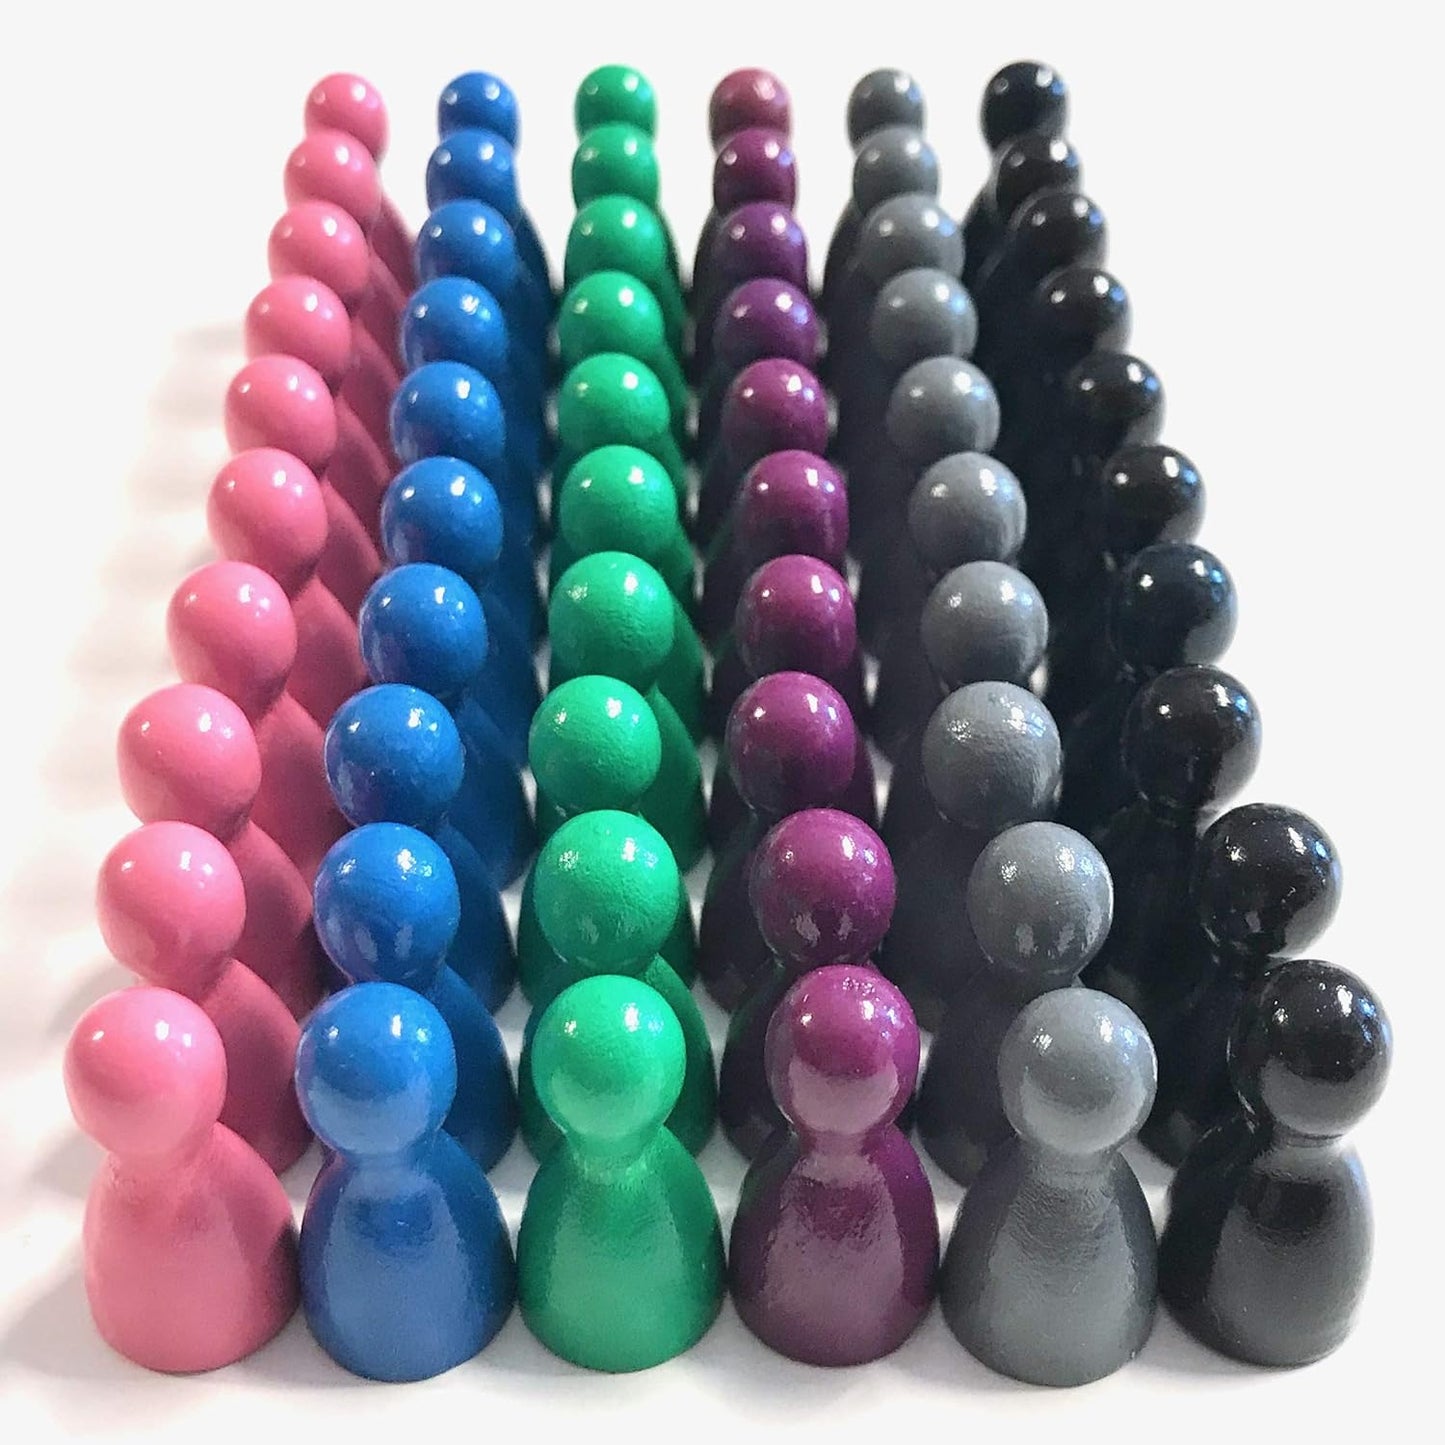 Spieltz Spielsteine - Halmakegel aus Holz Standardgröße 12/24 mm, 60 Stück, farblich gemischt, verschiedene Farbsets verfügbar